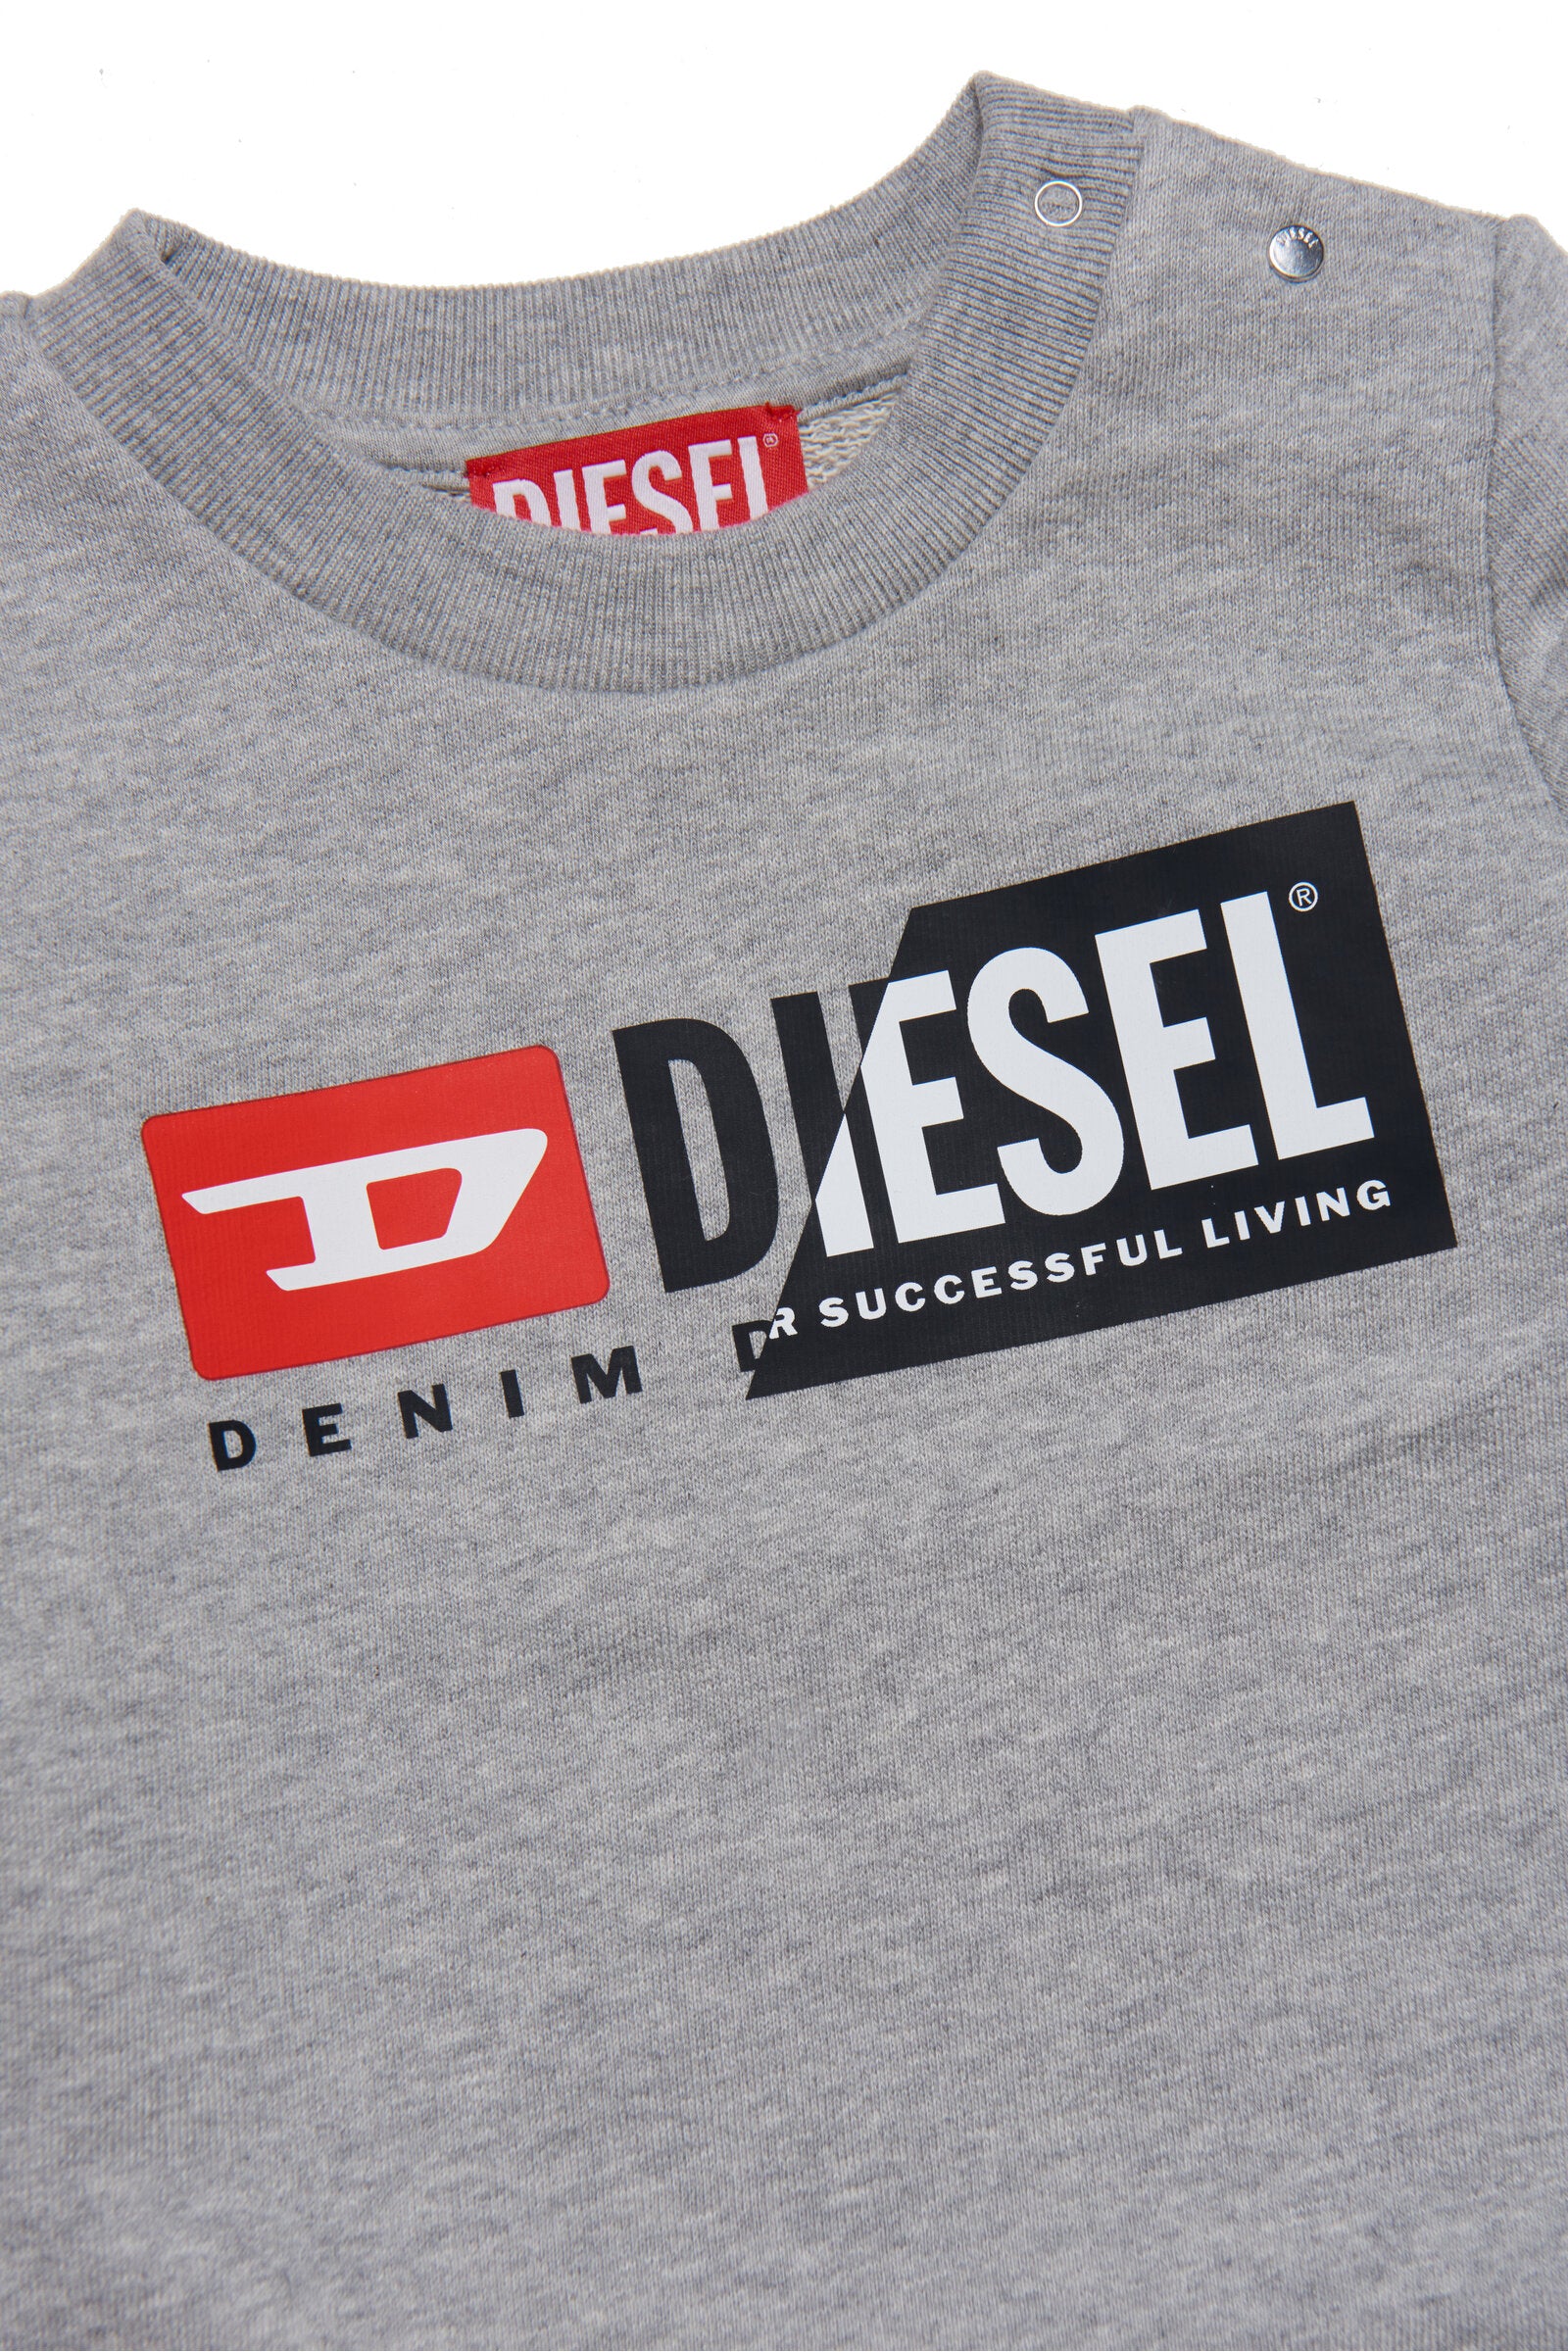 Diesel doubleのロゴとスナップボタン留めのグレーのスウェットシャツ